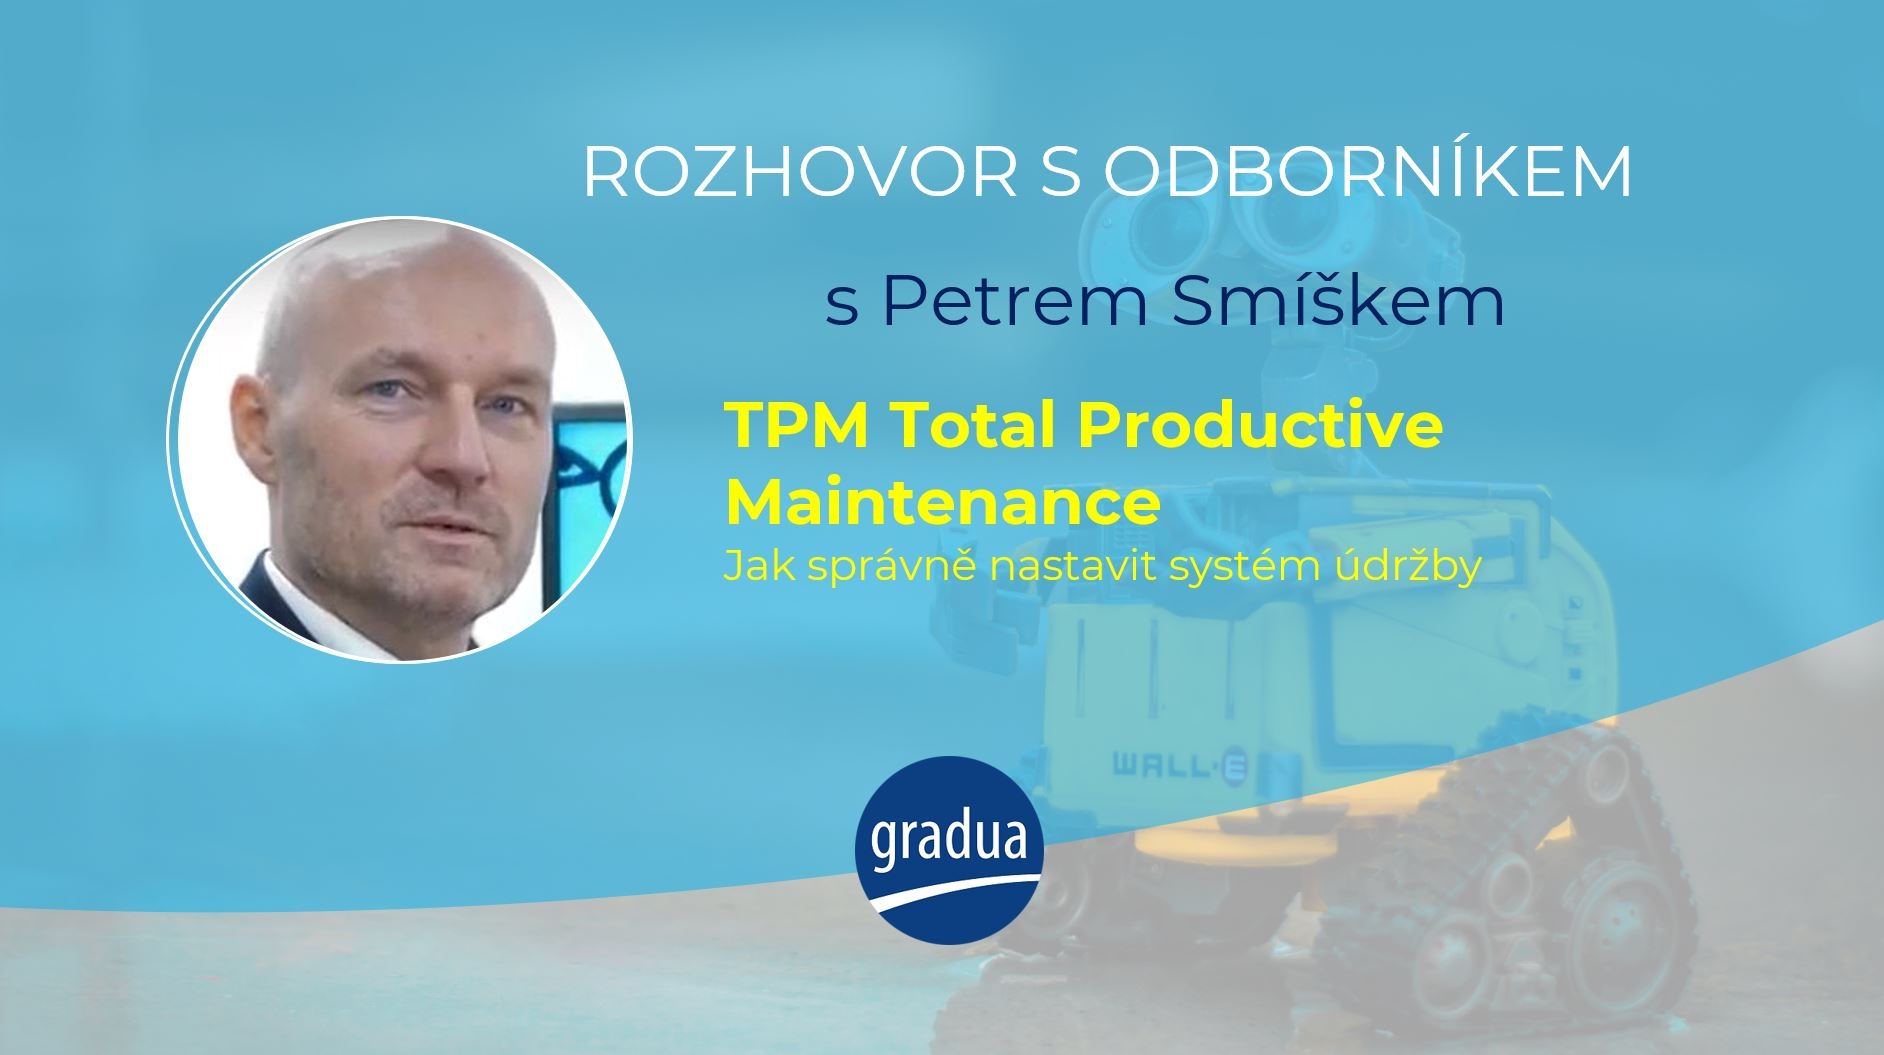 Rozhovor s odborníkem - Petrem Smíškem - TPM Total Productive Maintenance